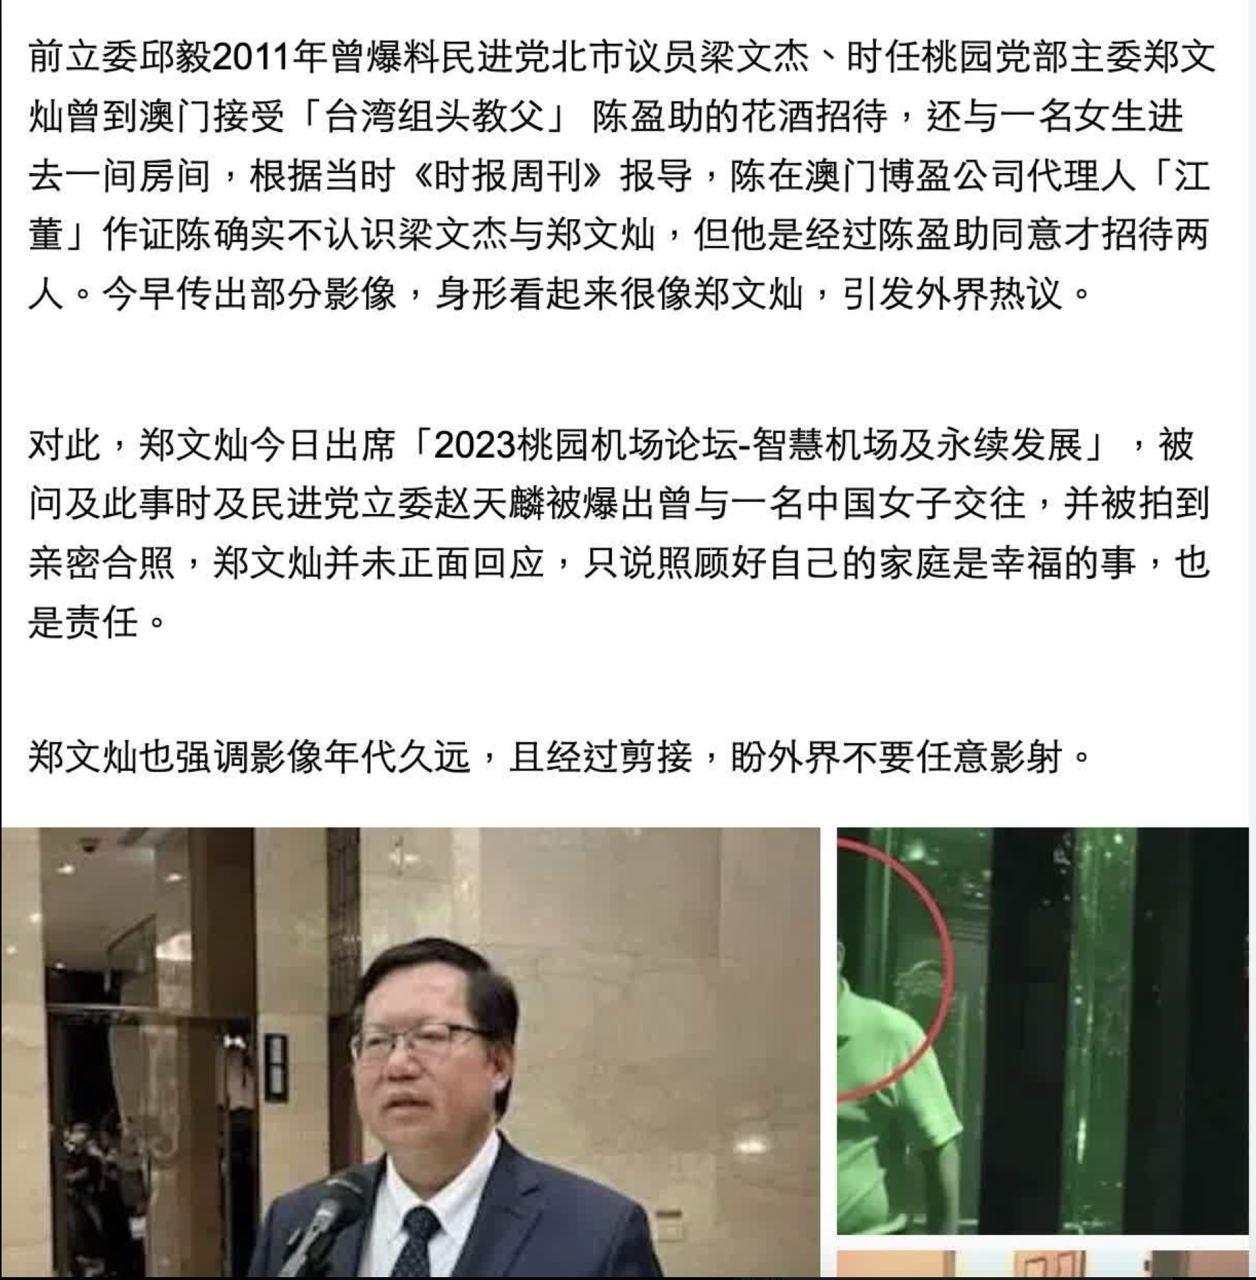 疑似 #台湾行政院 副院长 #郑文灿 与一名女子进入饭店私会的影片